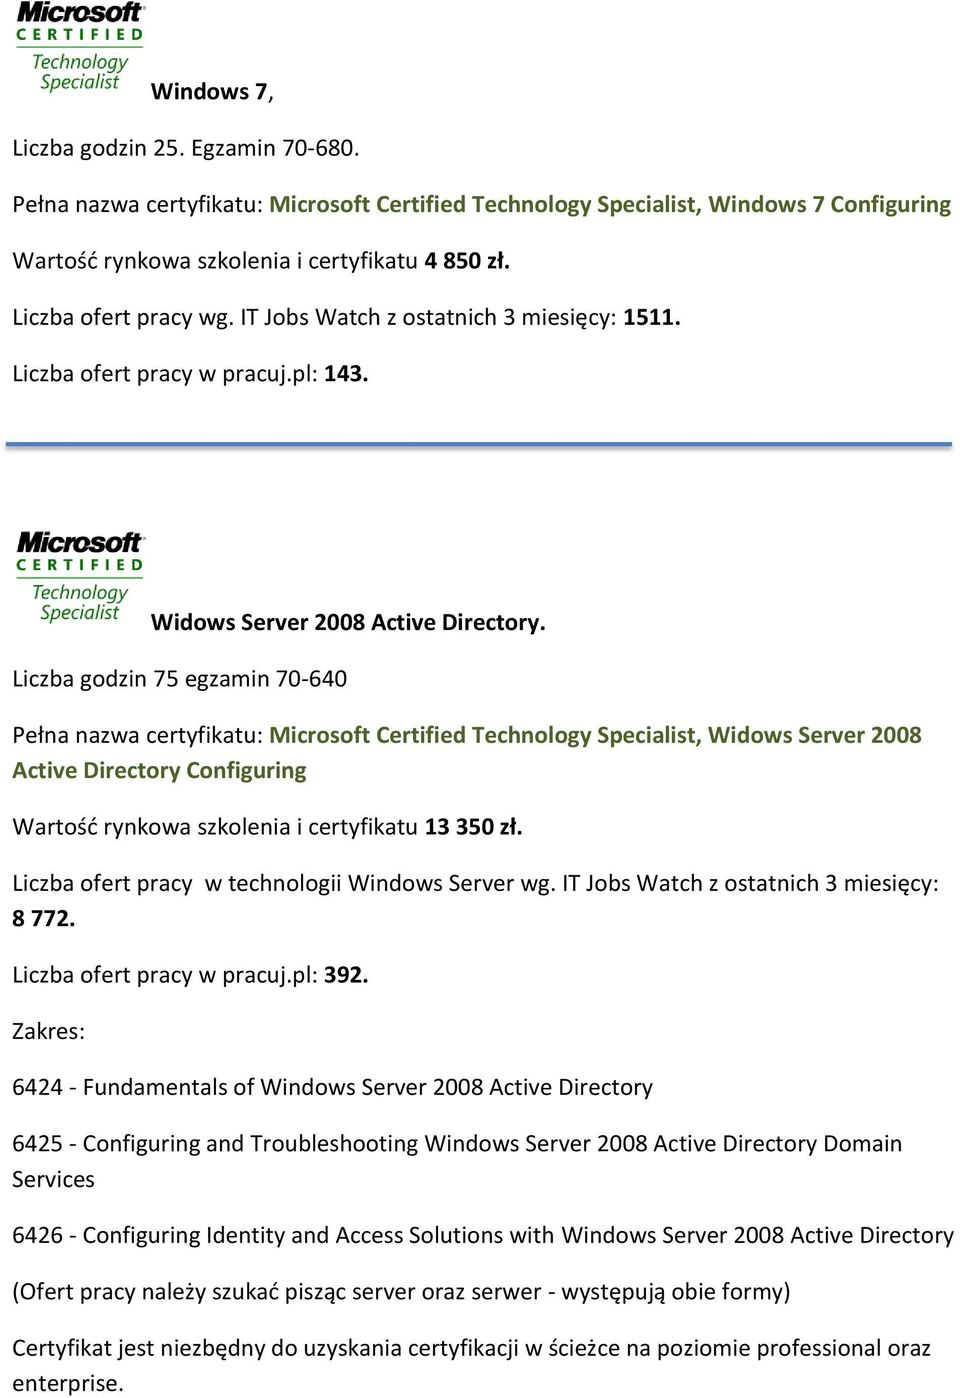 Liczba godzin 75 egzamin 70-640 Pełna nazwa certyfikatu: Microsoft Certified Technology Specialist, Widows Server 2008 Active Directory Configuring Wartośd rynkowa szkolenia i certyfikatu 13 350 zł.